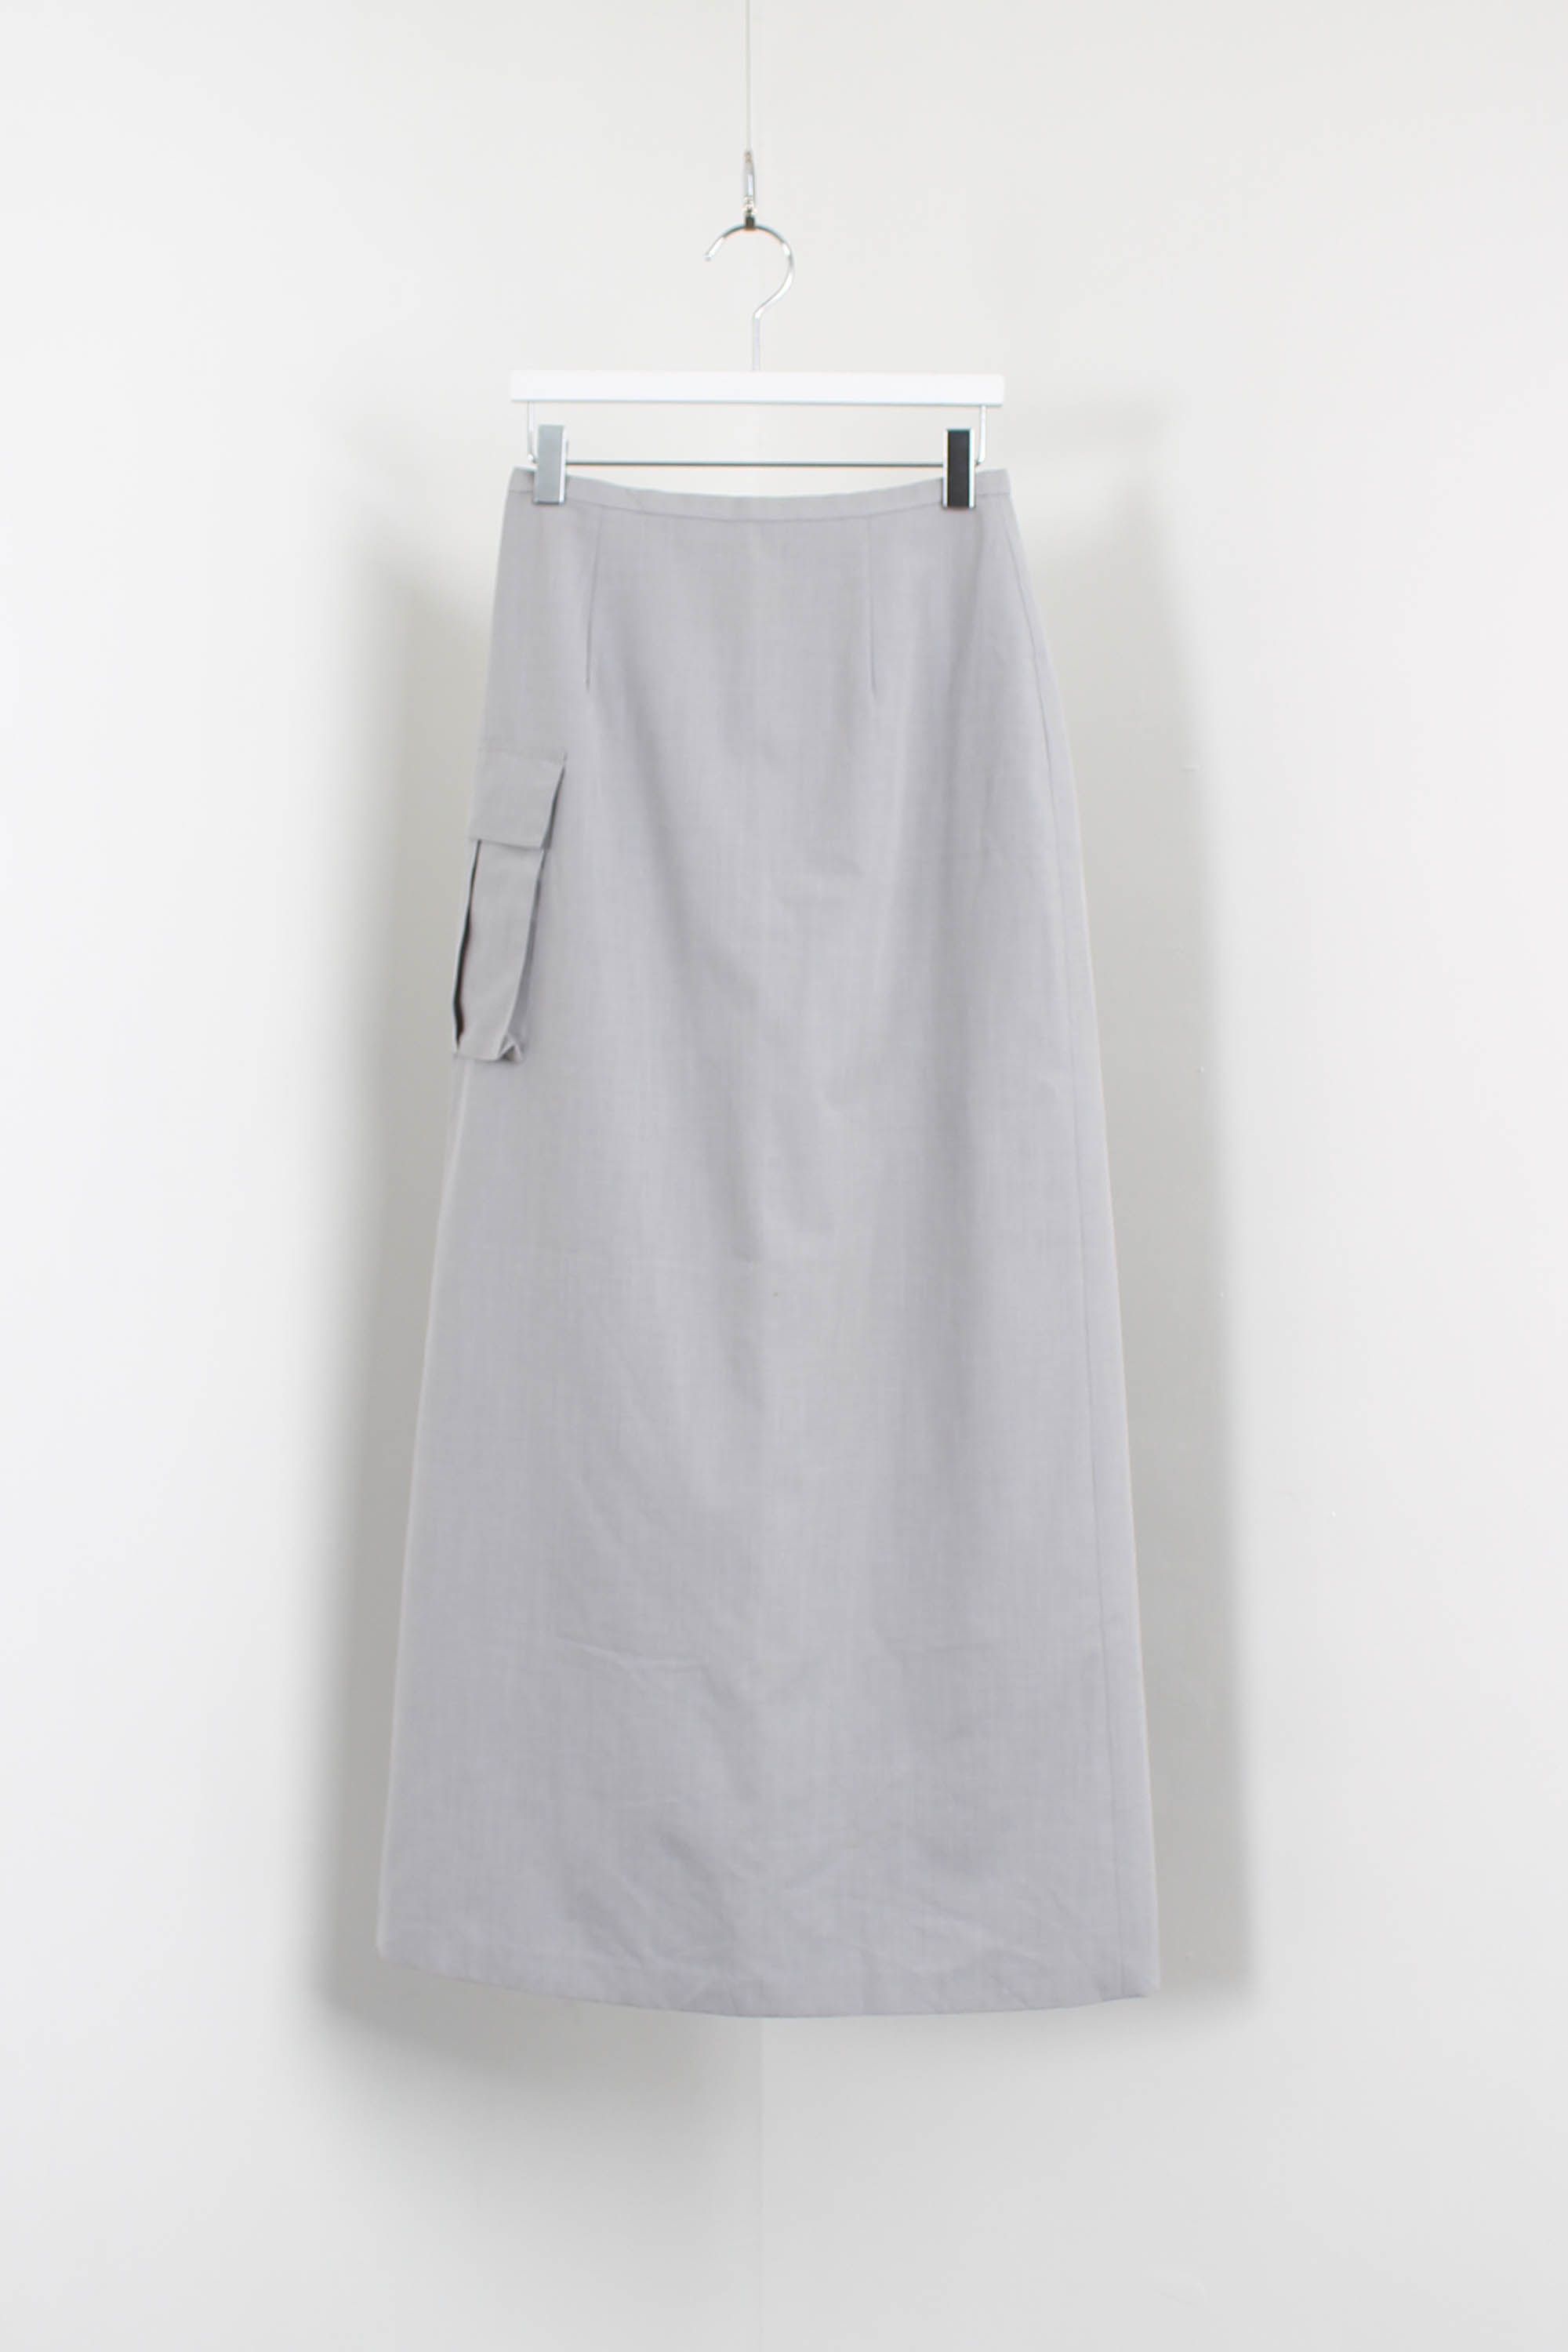 PERSIL pocket skirt